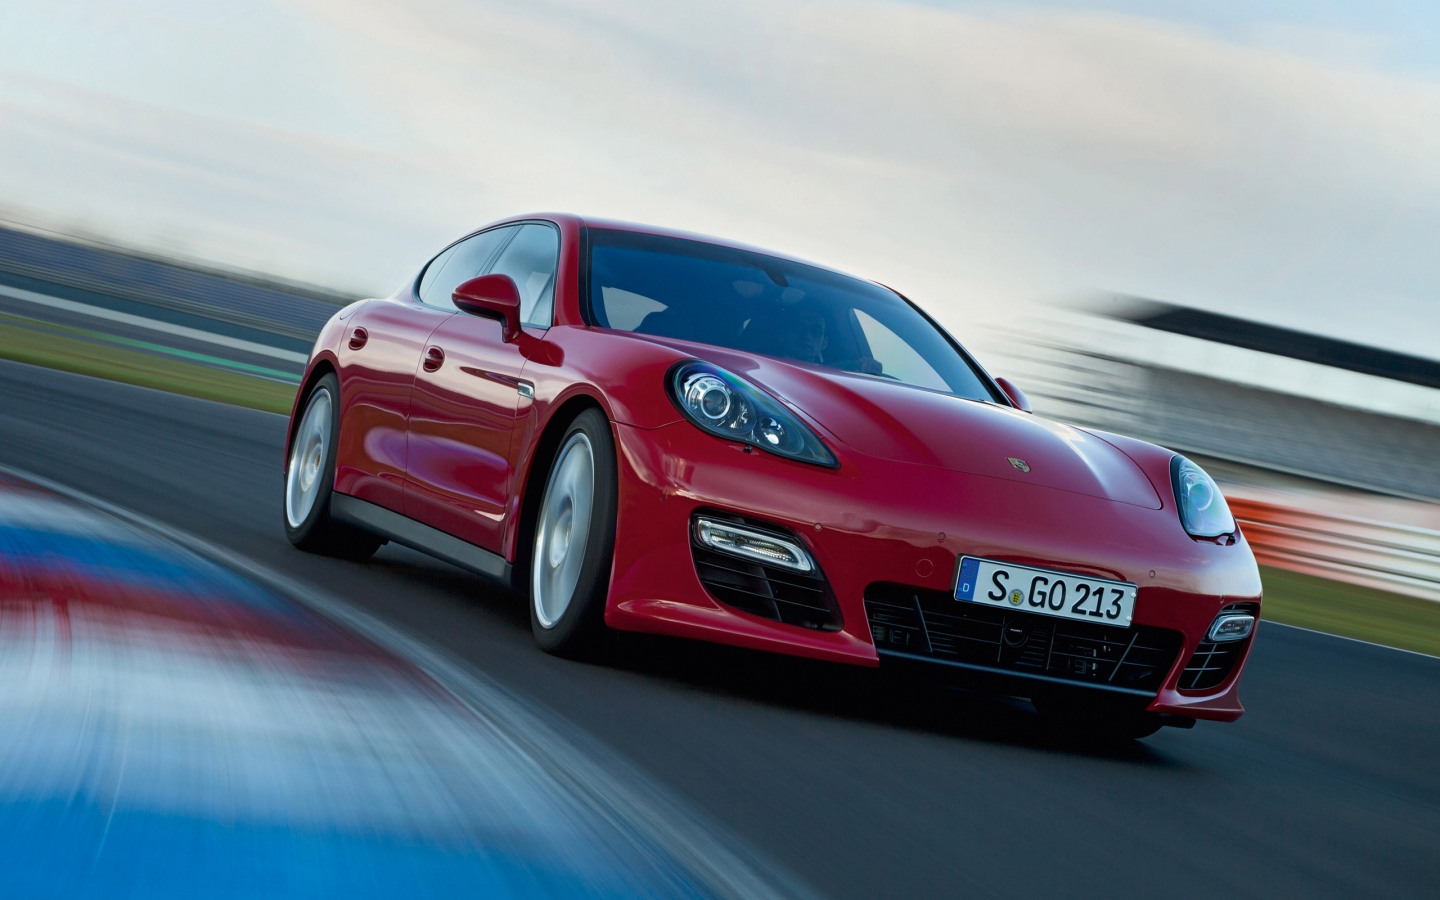 2012 Porsche Panamera GTS for 1440 x 900 widescreen resolution